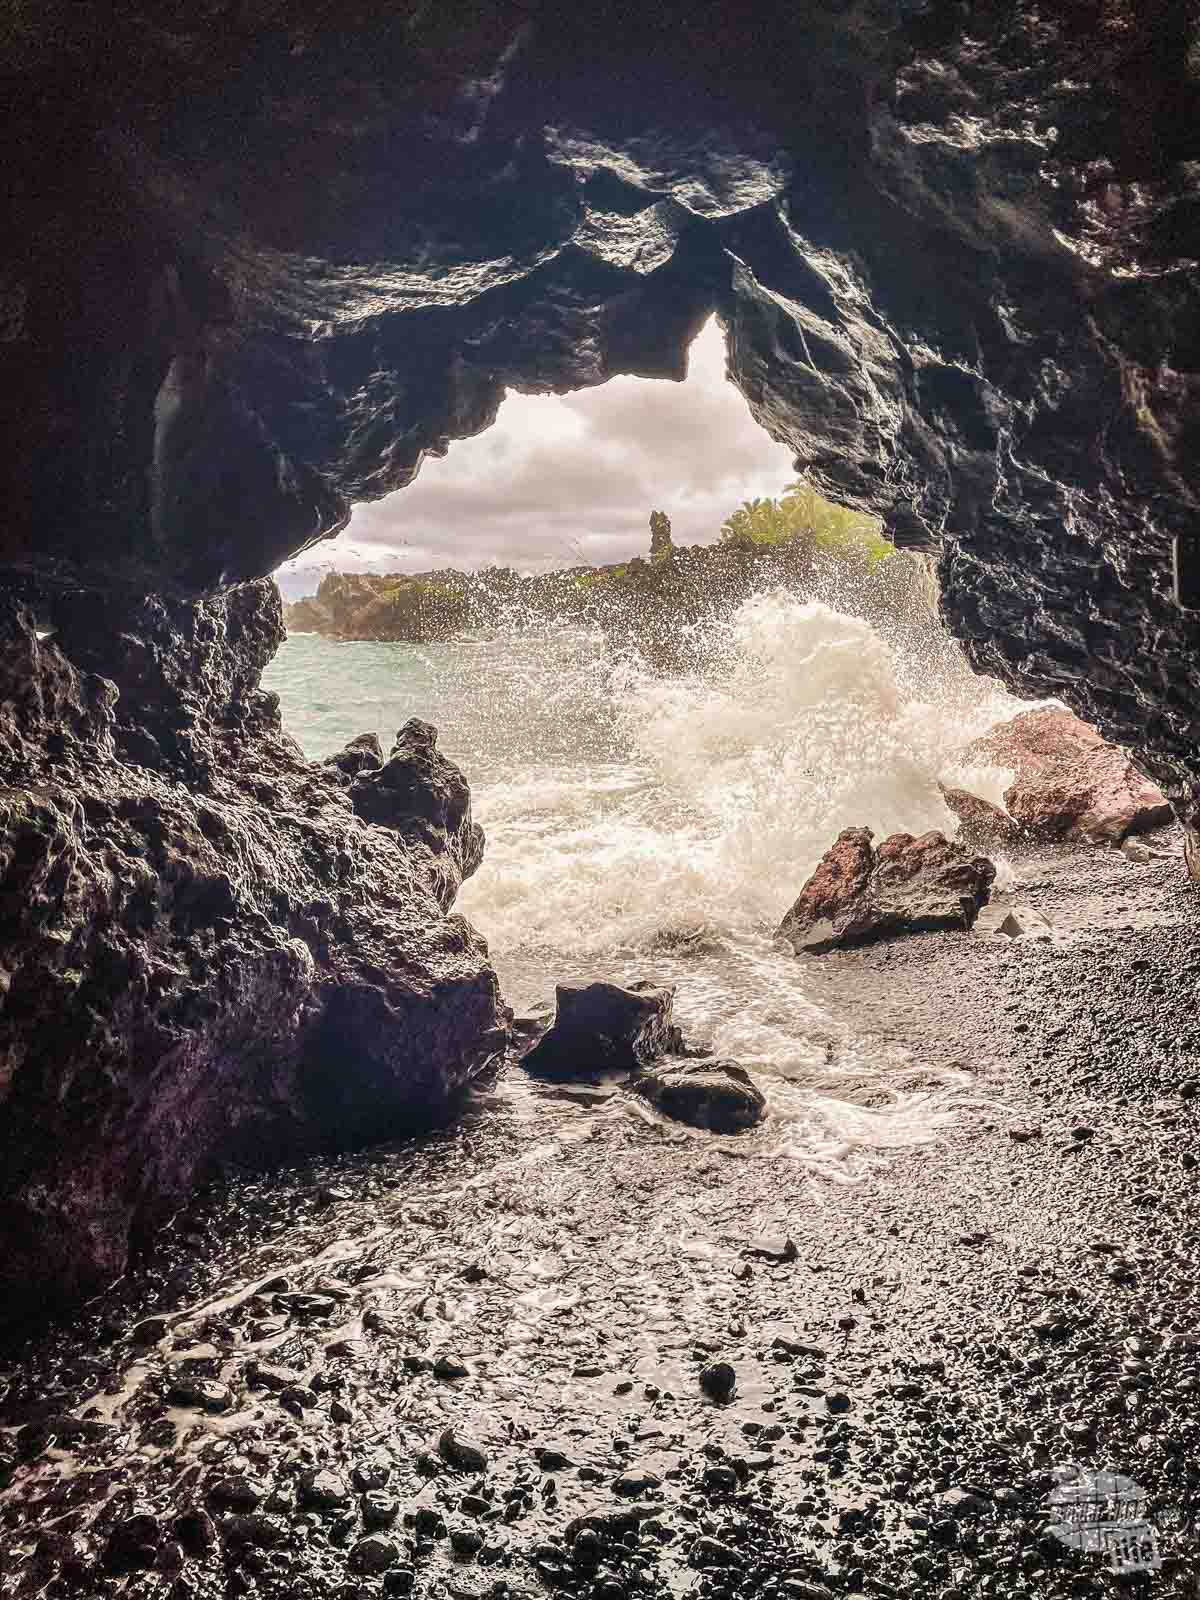 Sea cave at Wai'anapanapa State Park in Maui.